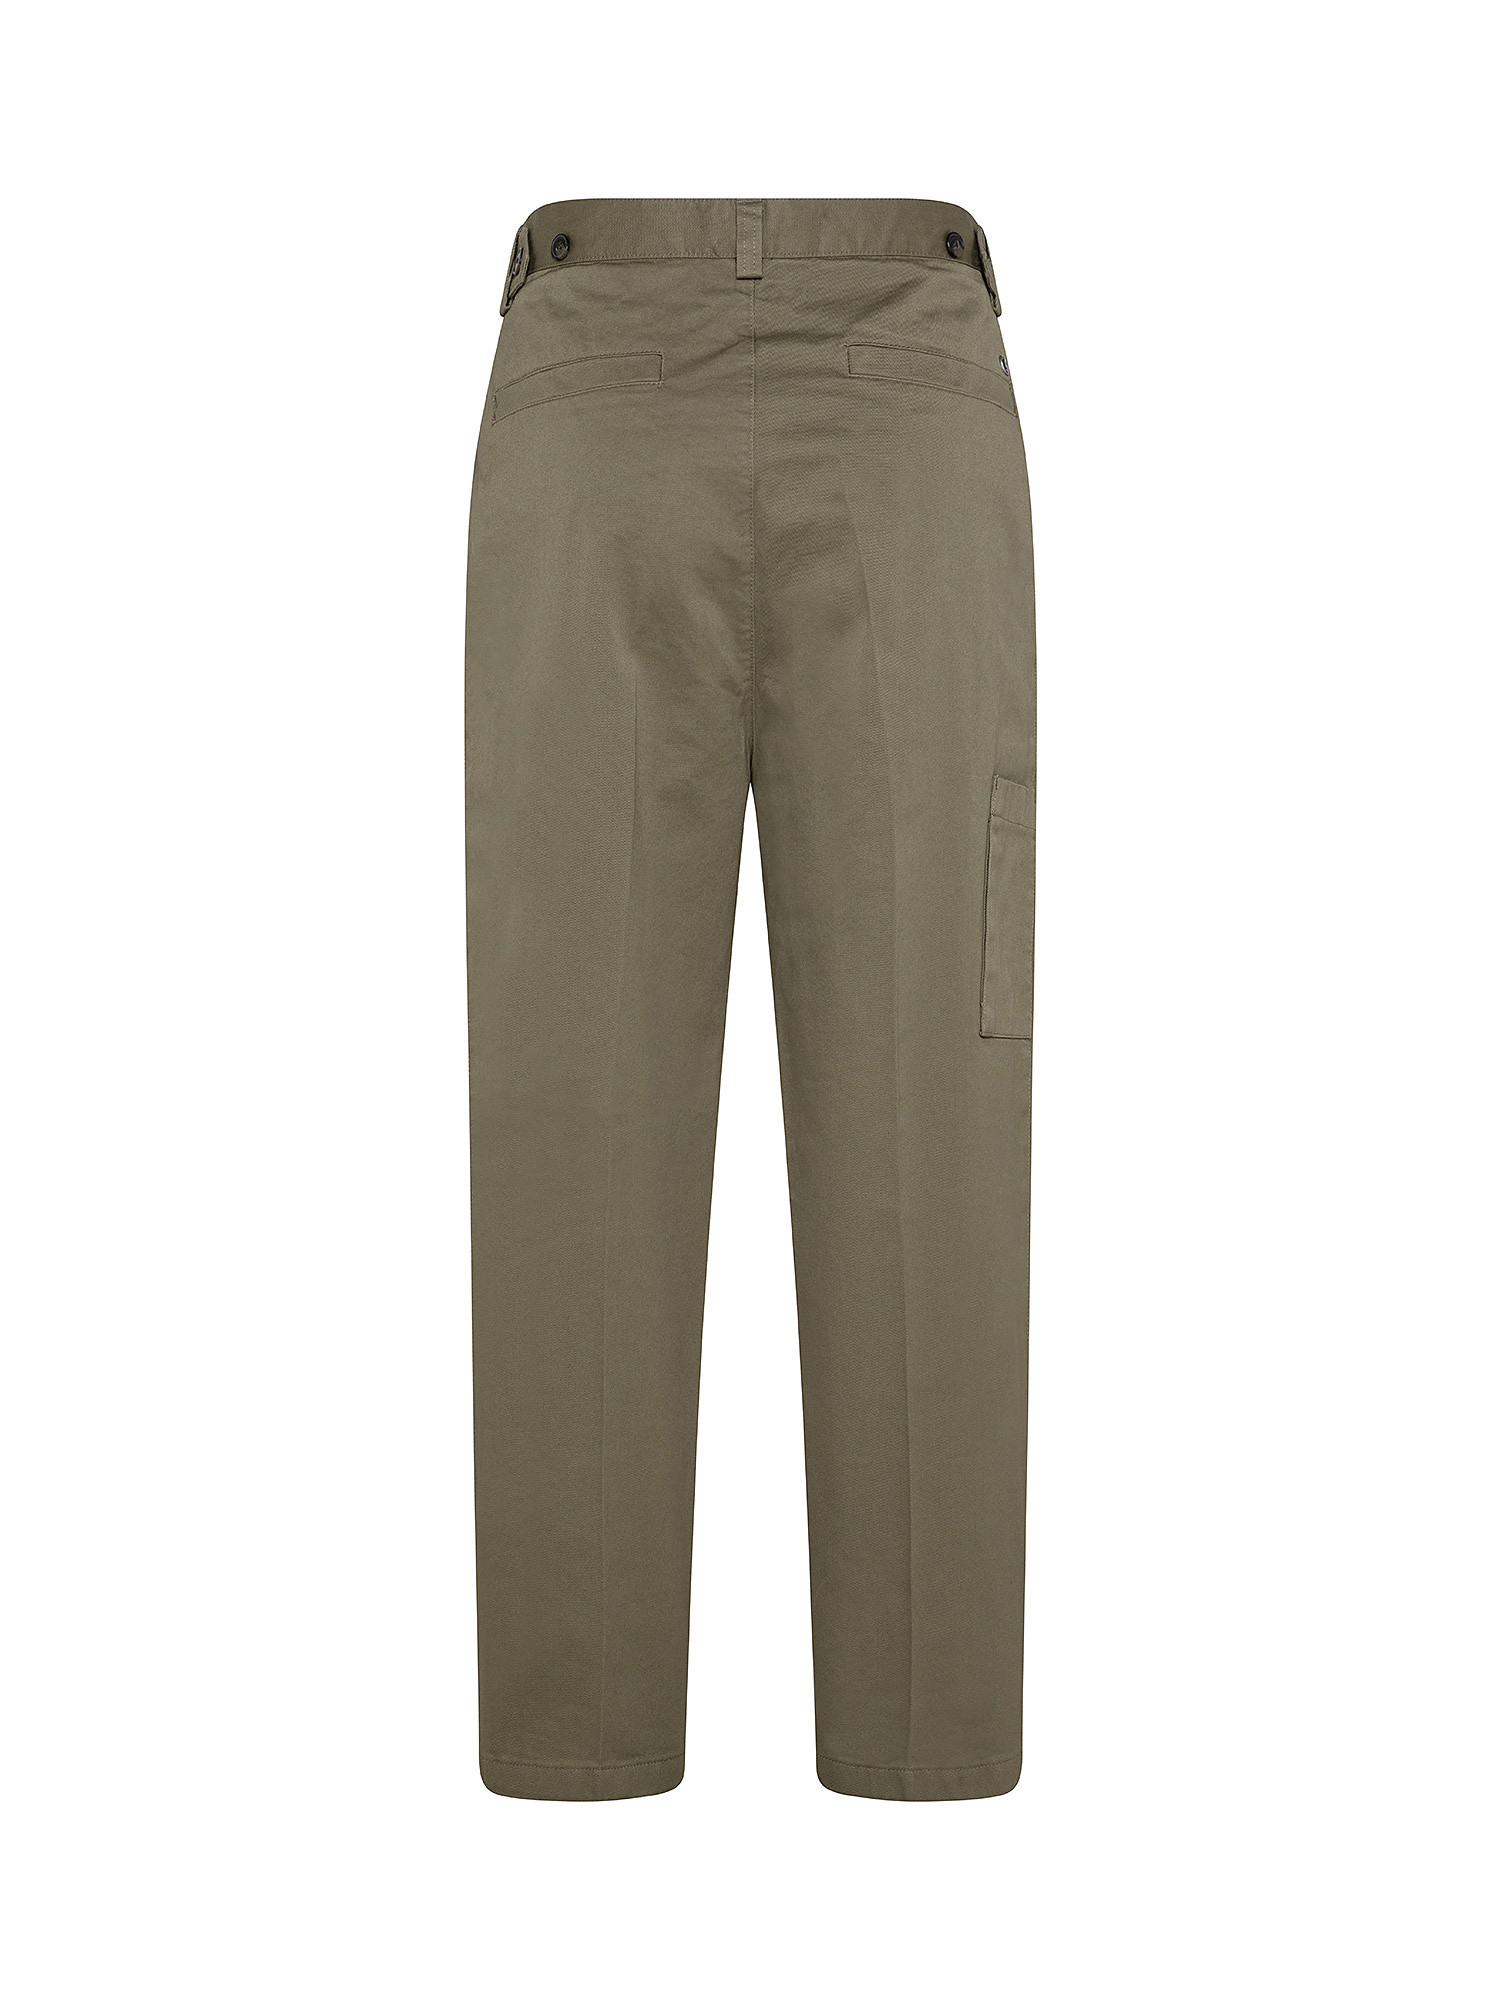 Pantaloni con vestibilità larga, Marrone, large image number 1